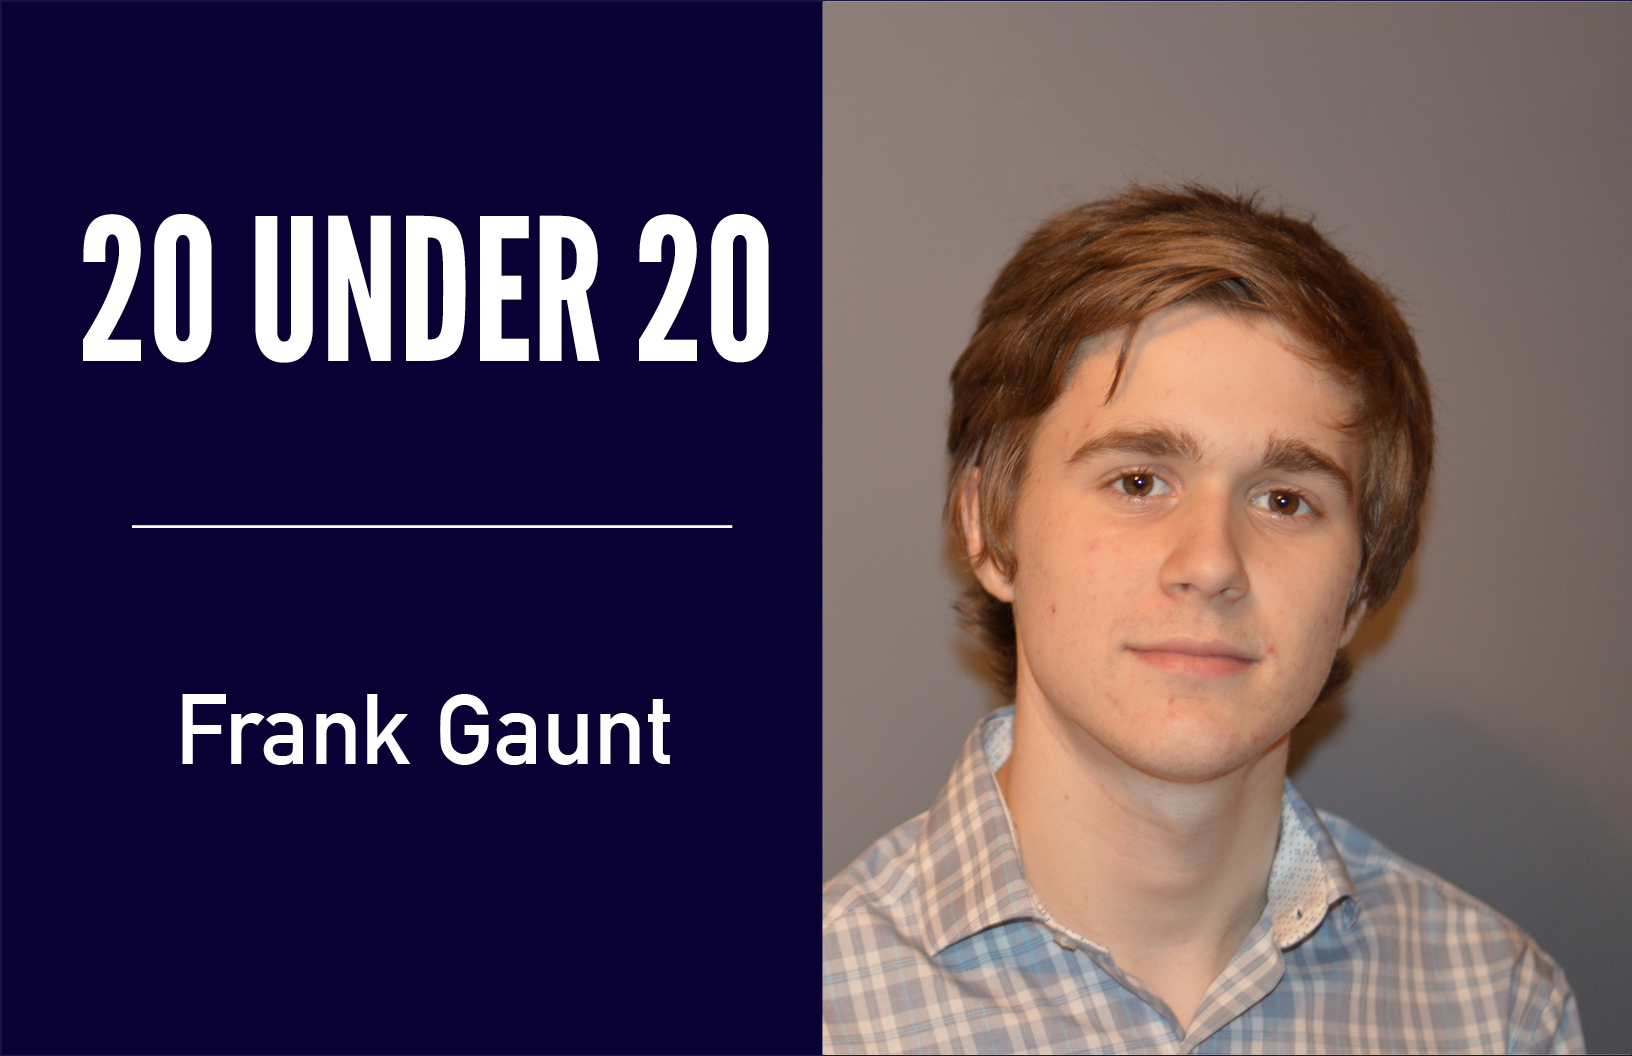 Frank-Gaunt-20-under-20